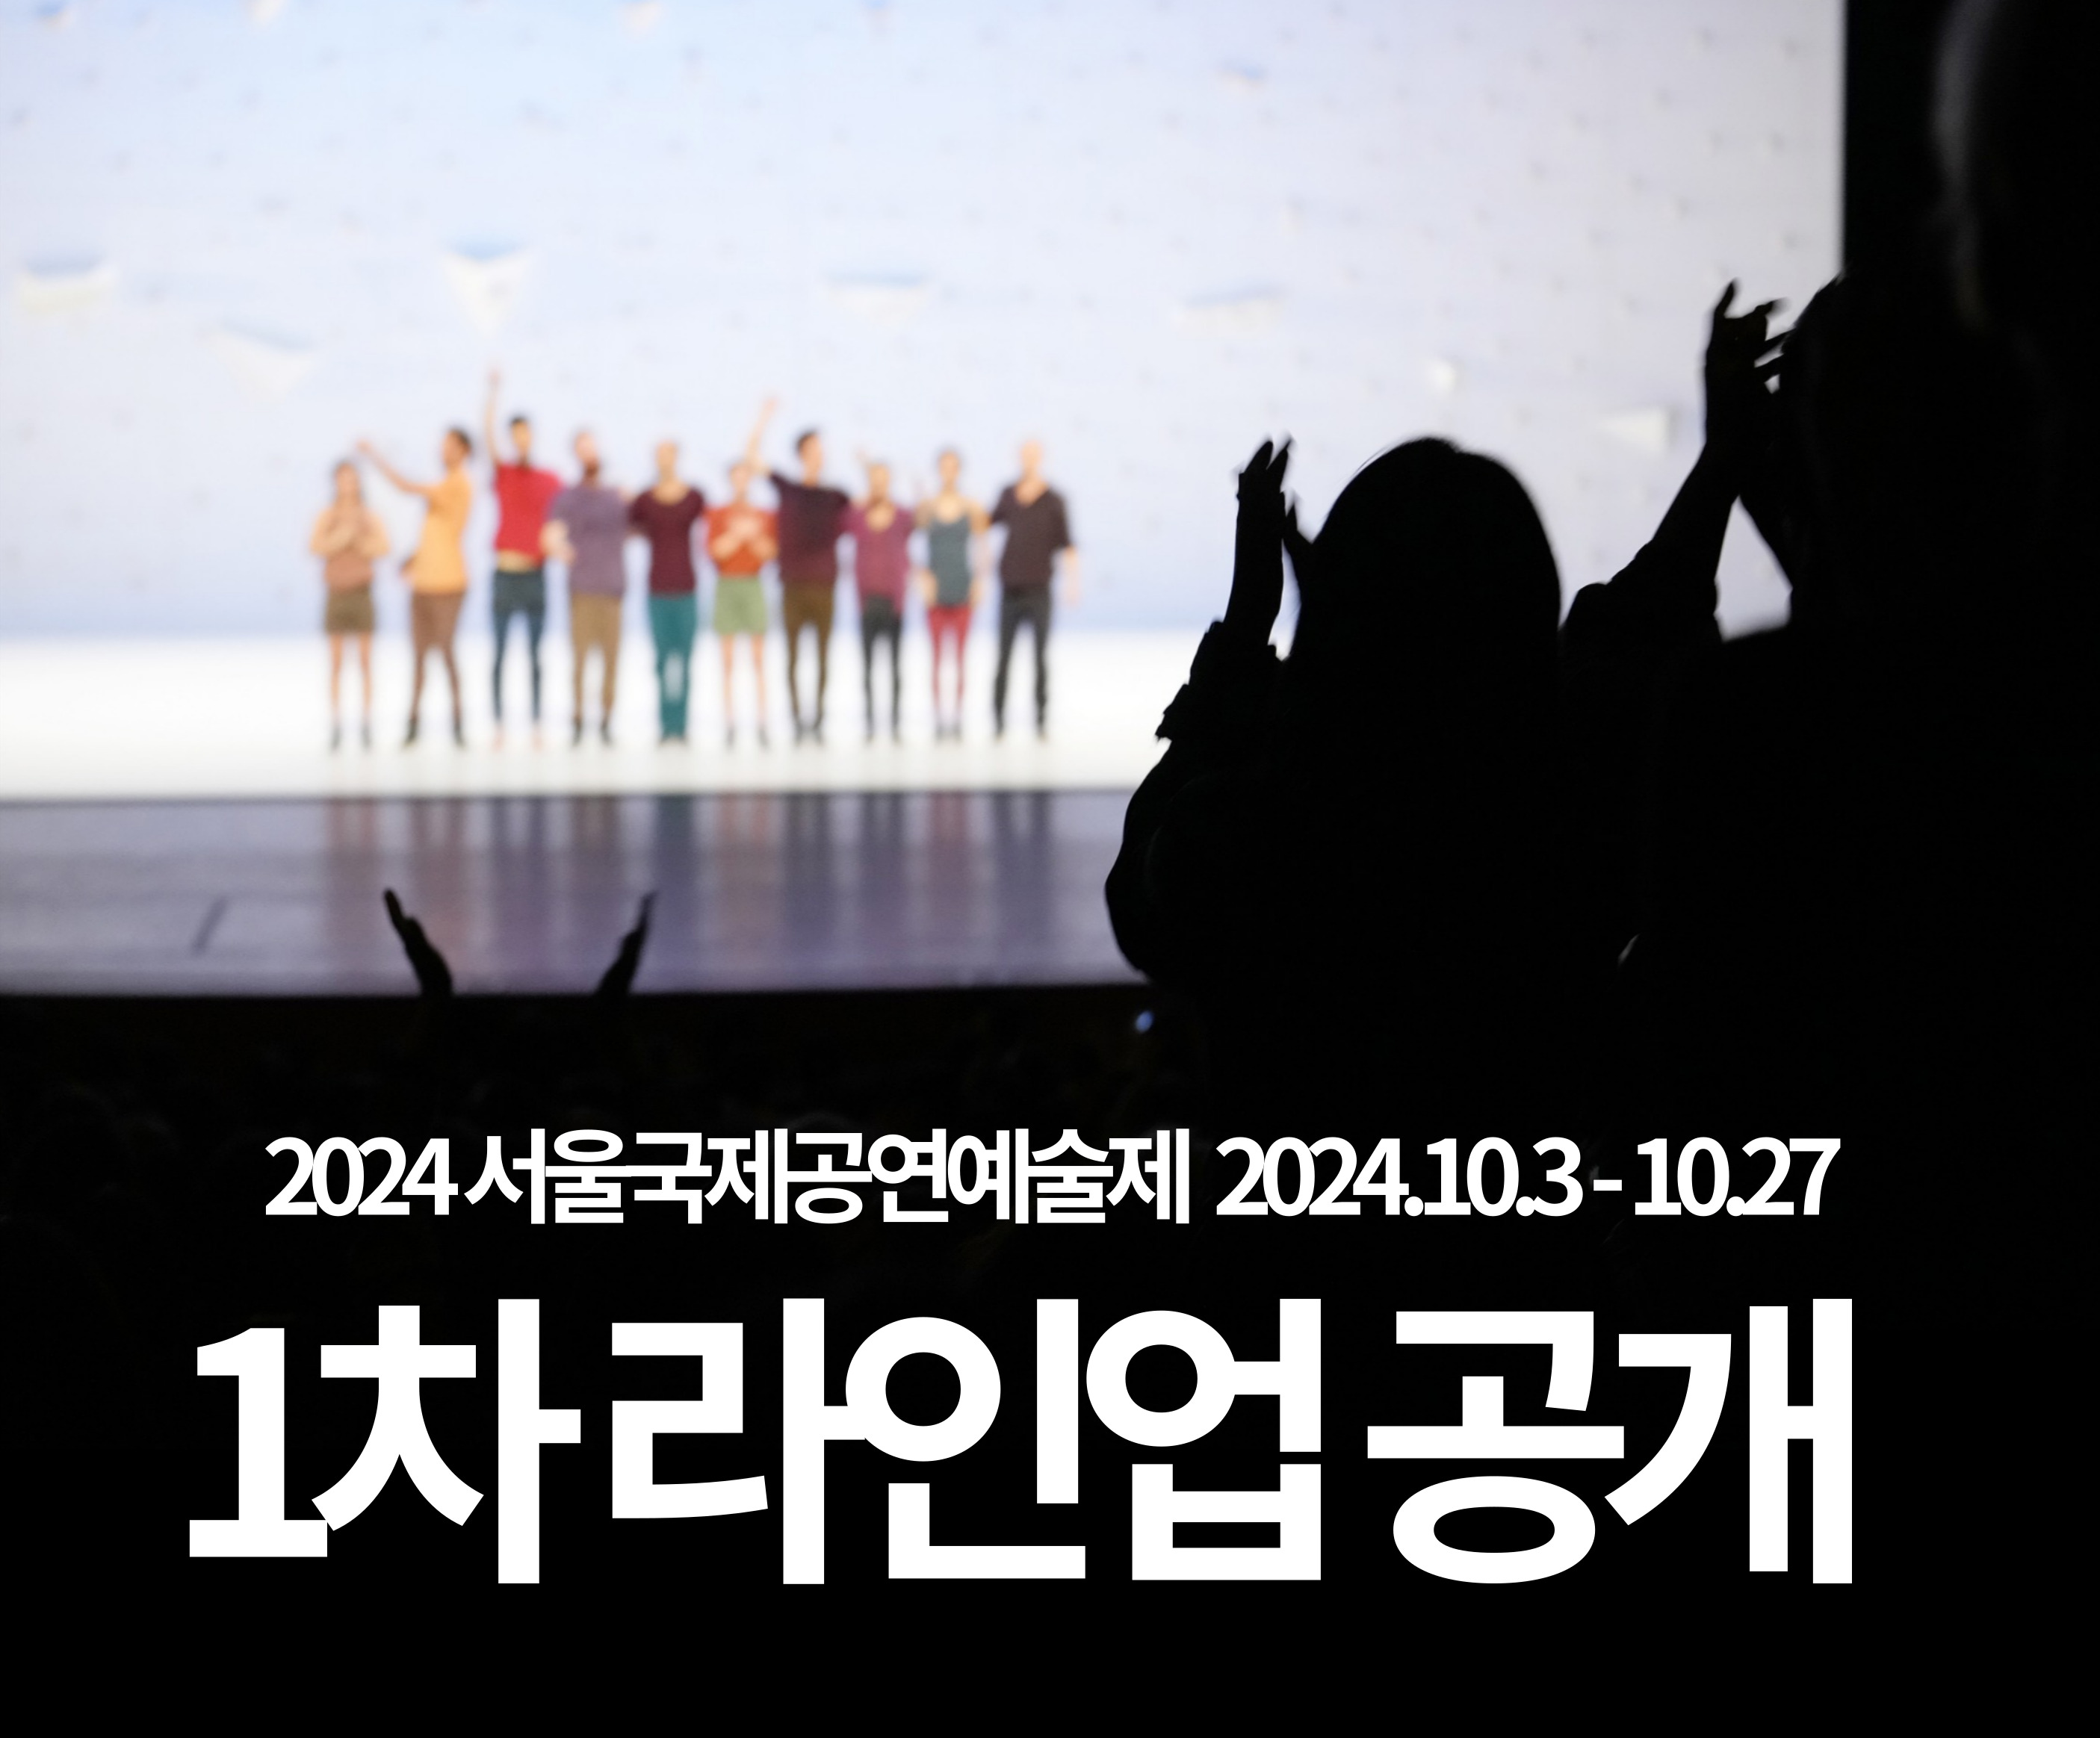 2023 서울국제공연예술제